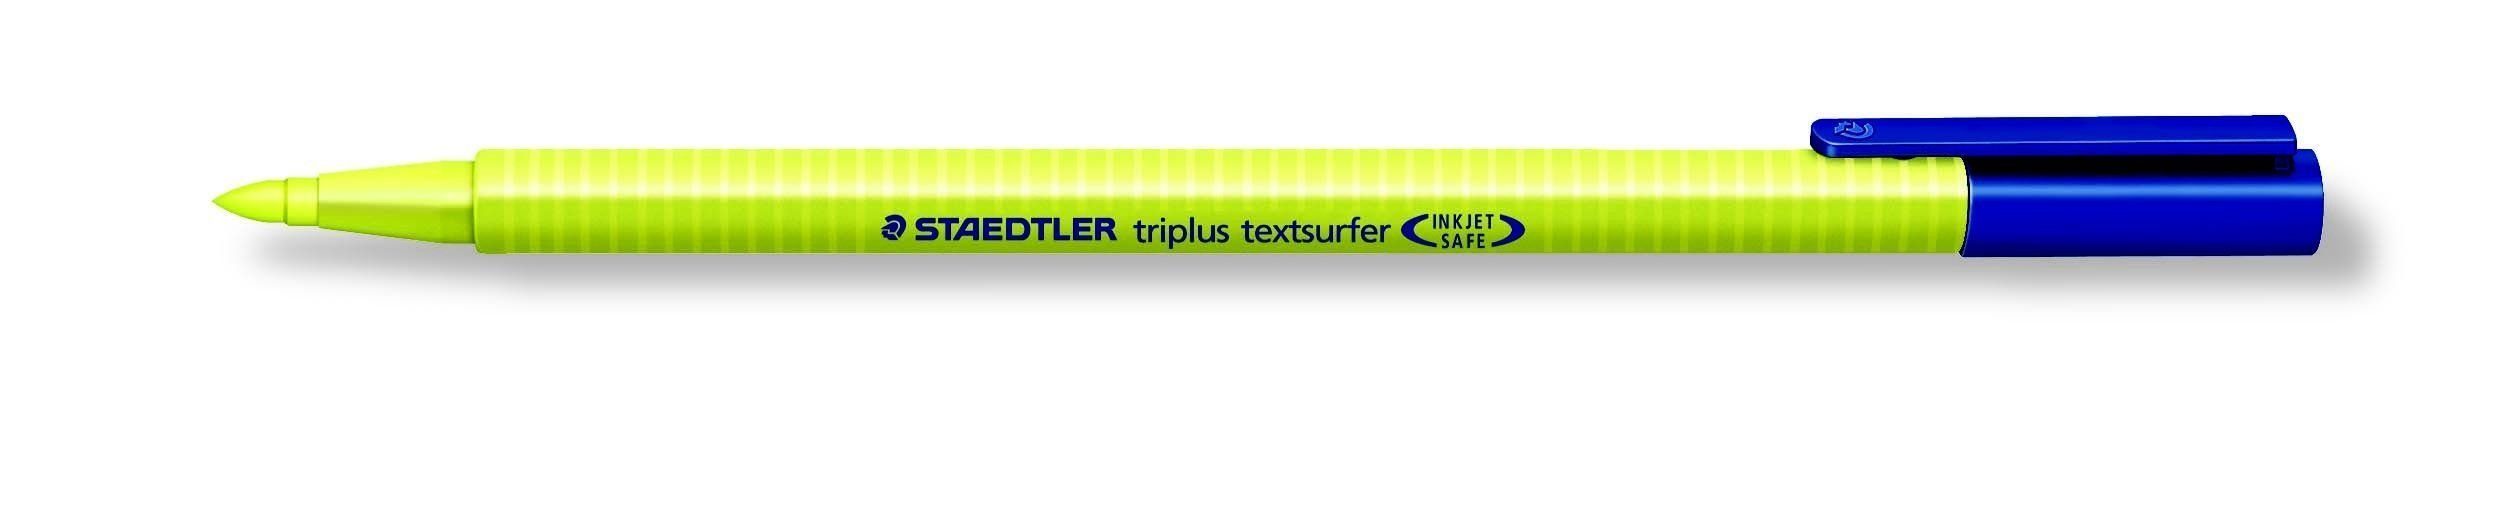 triplus STAEDTLER STAEDTLER textsurfer gelb Textmarker Kugelschreiber